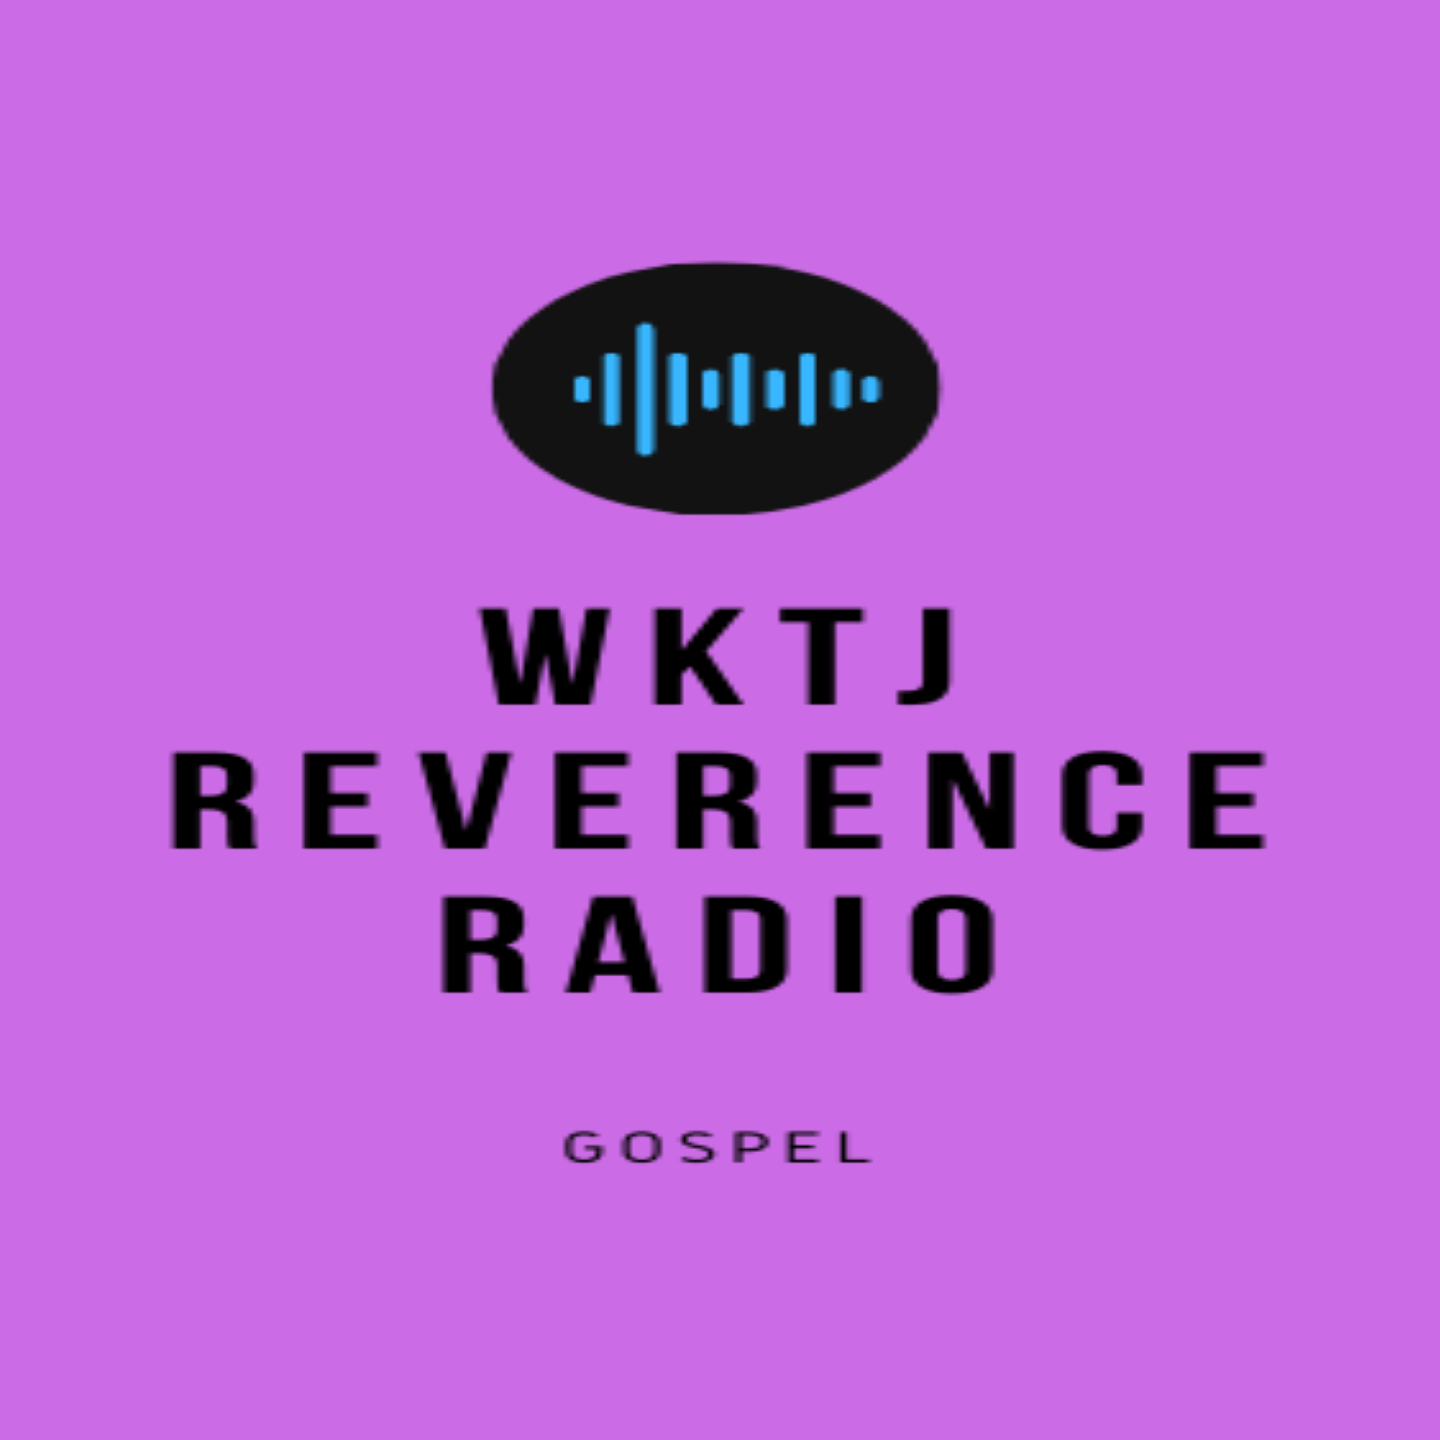 WKTJ Reverence Radio